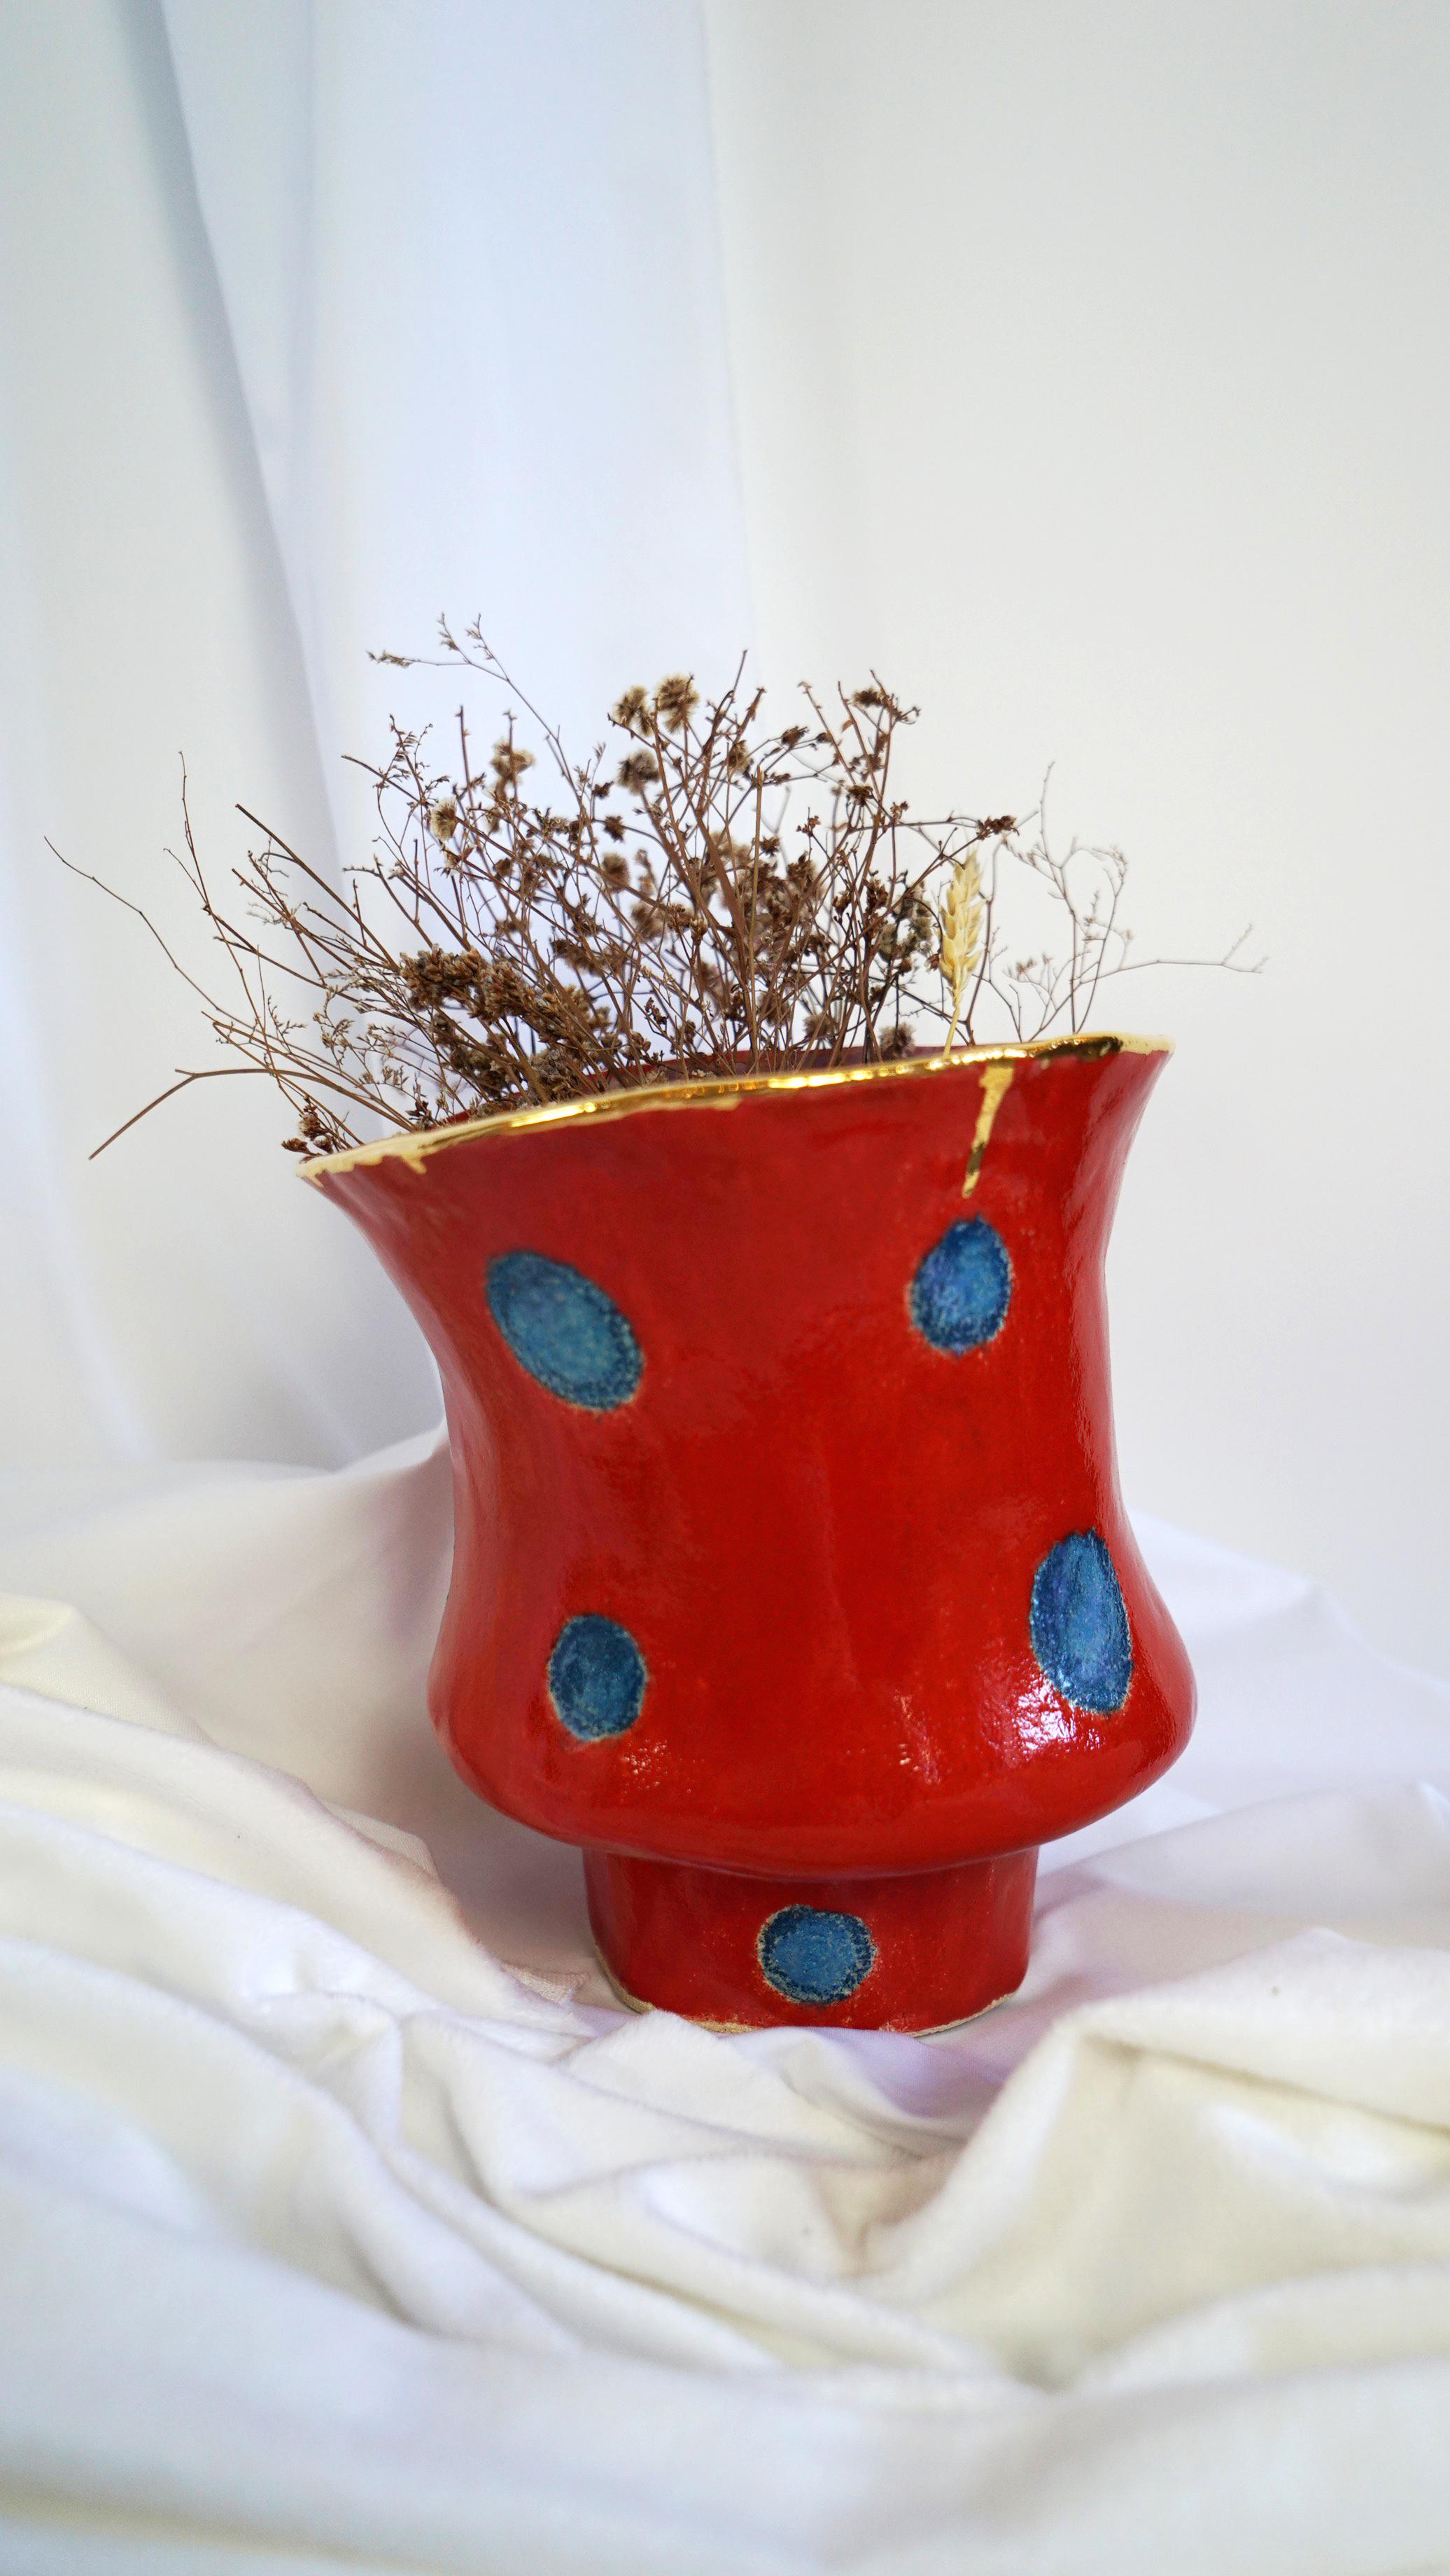 Olé 5-Vase von Hania Jneid
Einzigartiges Stück.
Abmessungen: Ø 20 x H 20 cm.
MATERIALIEN: Steingut, Glasur und Goldglanz.

Nummerierte Vase Olé aus der Kollektion Olé, eine Hommage an die Flamenco-Kultur. Farbe: Rot auf blauen, skizzenhaften